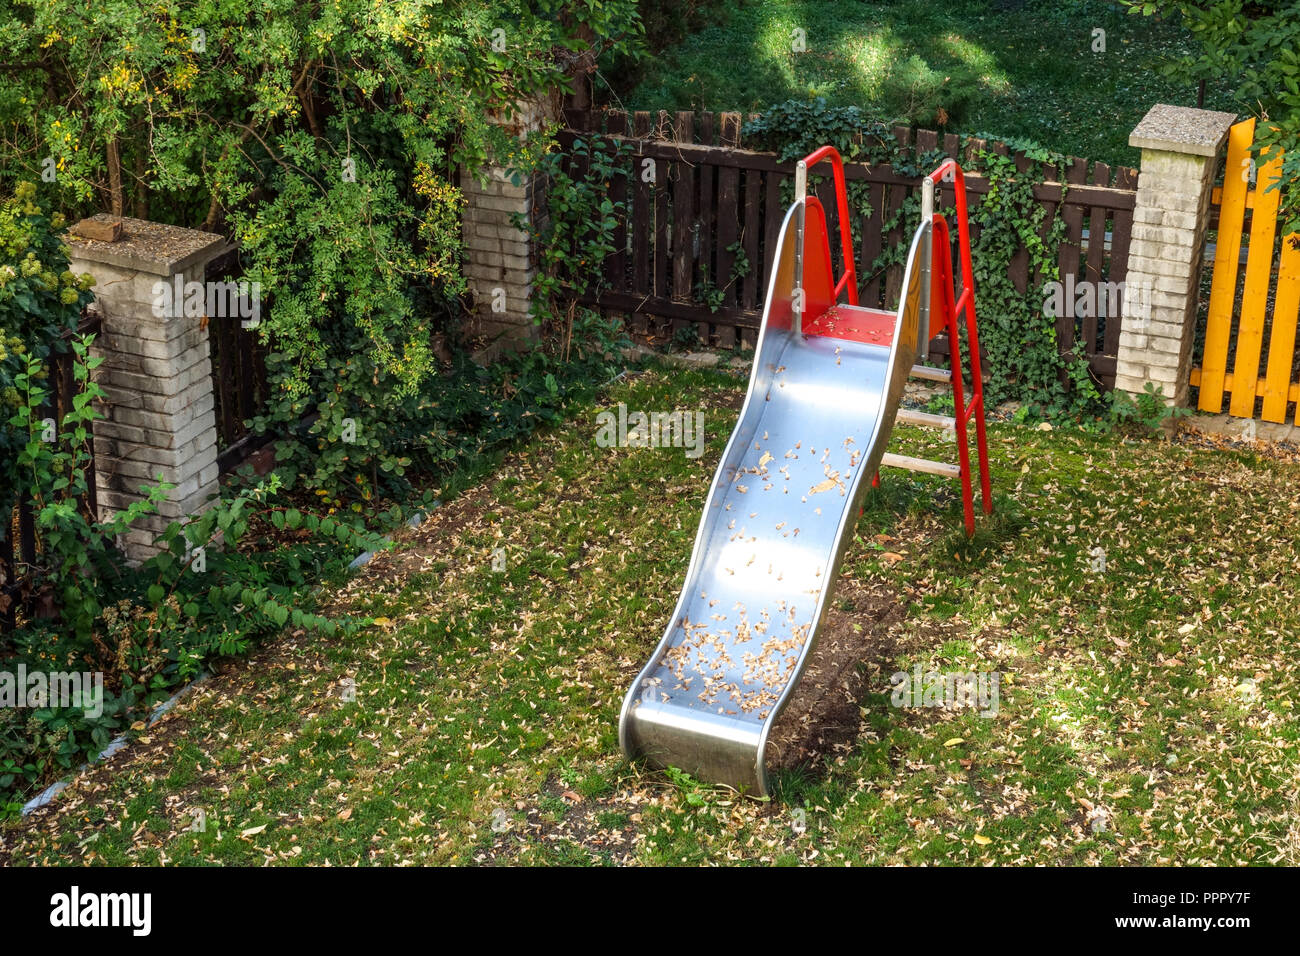 Children slide in the garden, Slide garden Stock Photo